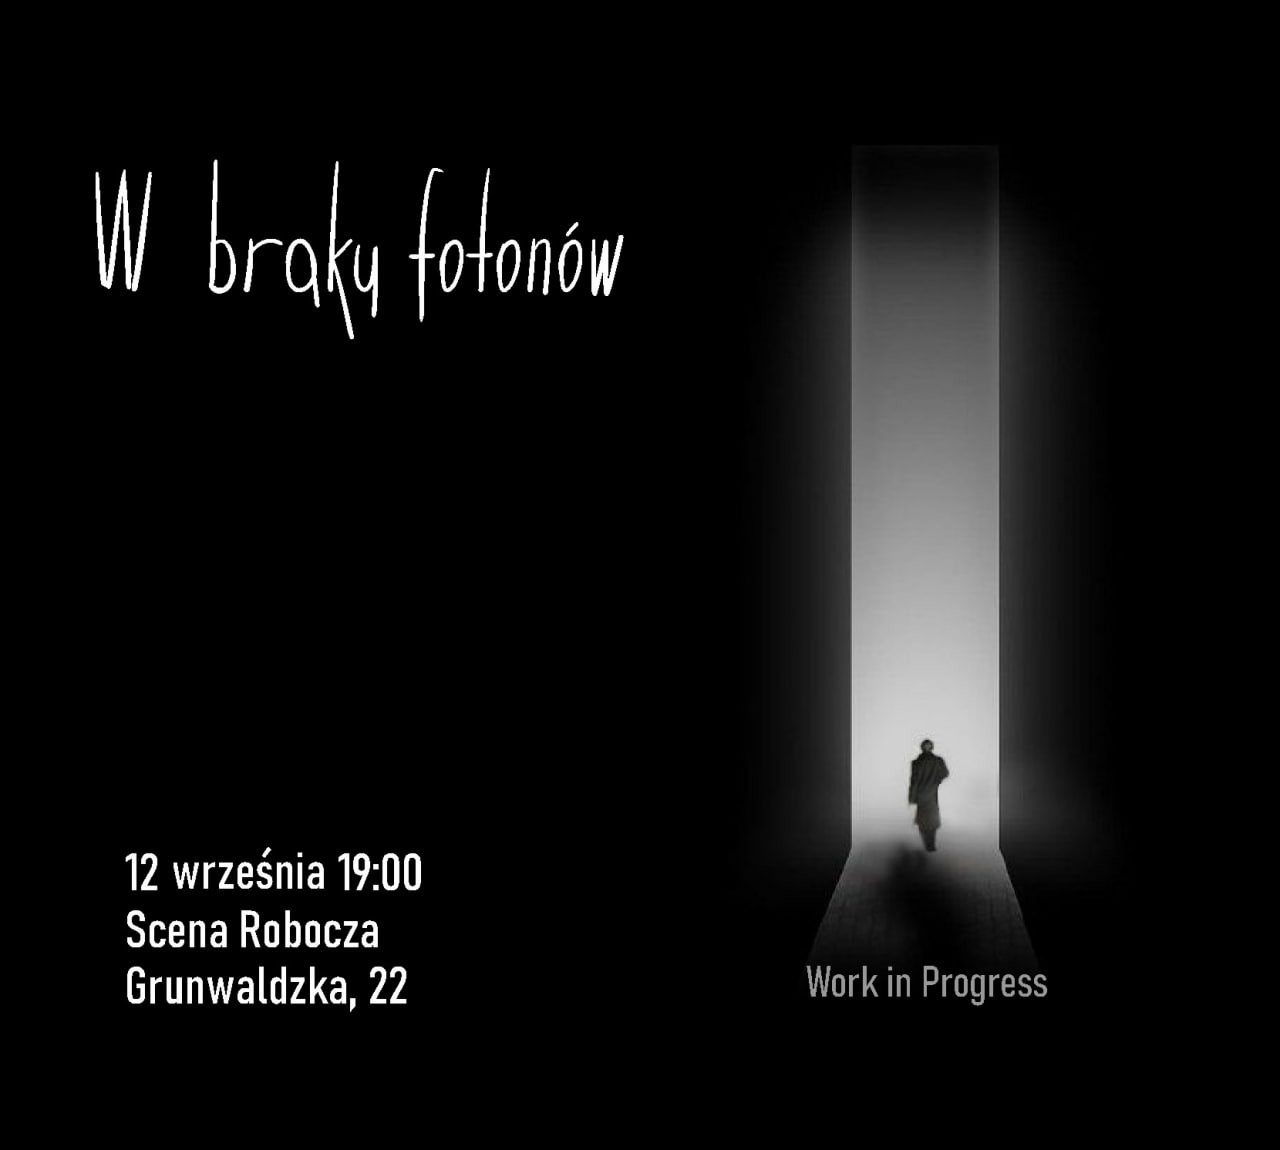  Premiera spektaklu pt. "W braku fotonów" przygotowanego przez białoruską aktorkę p. Alenę Hiranok,